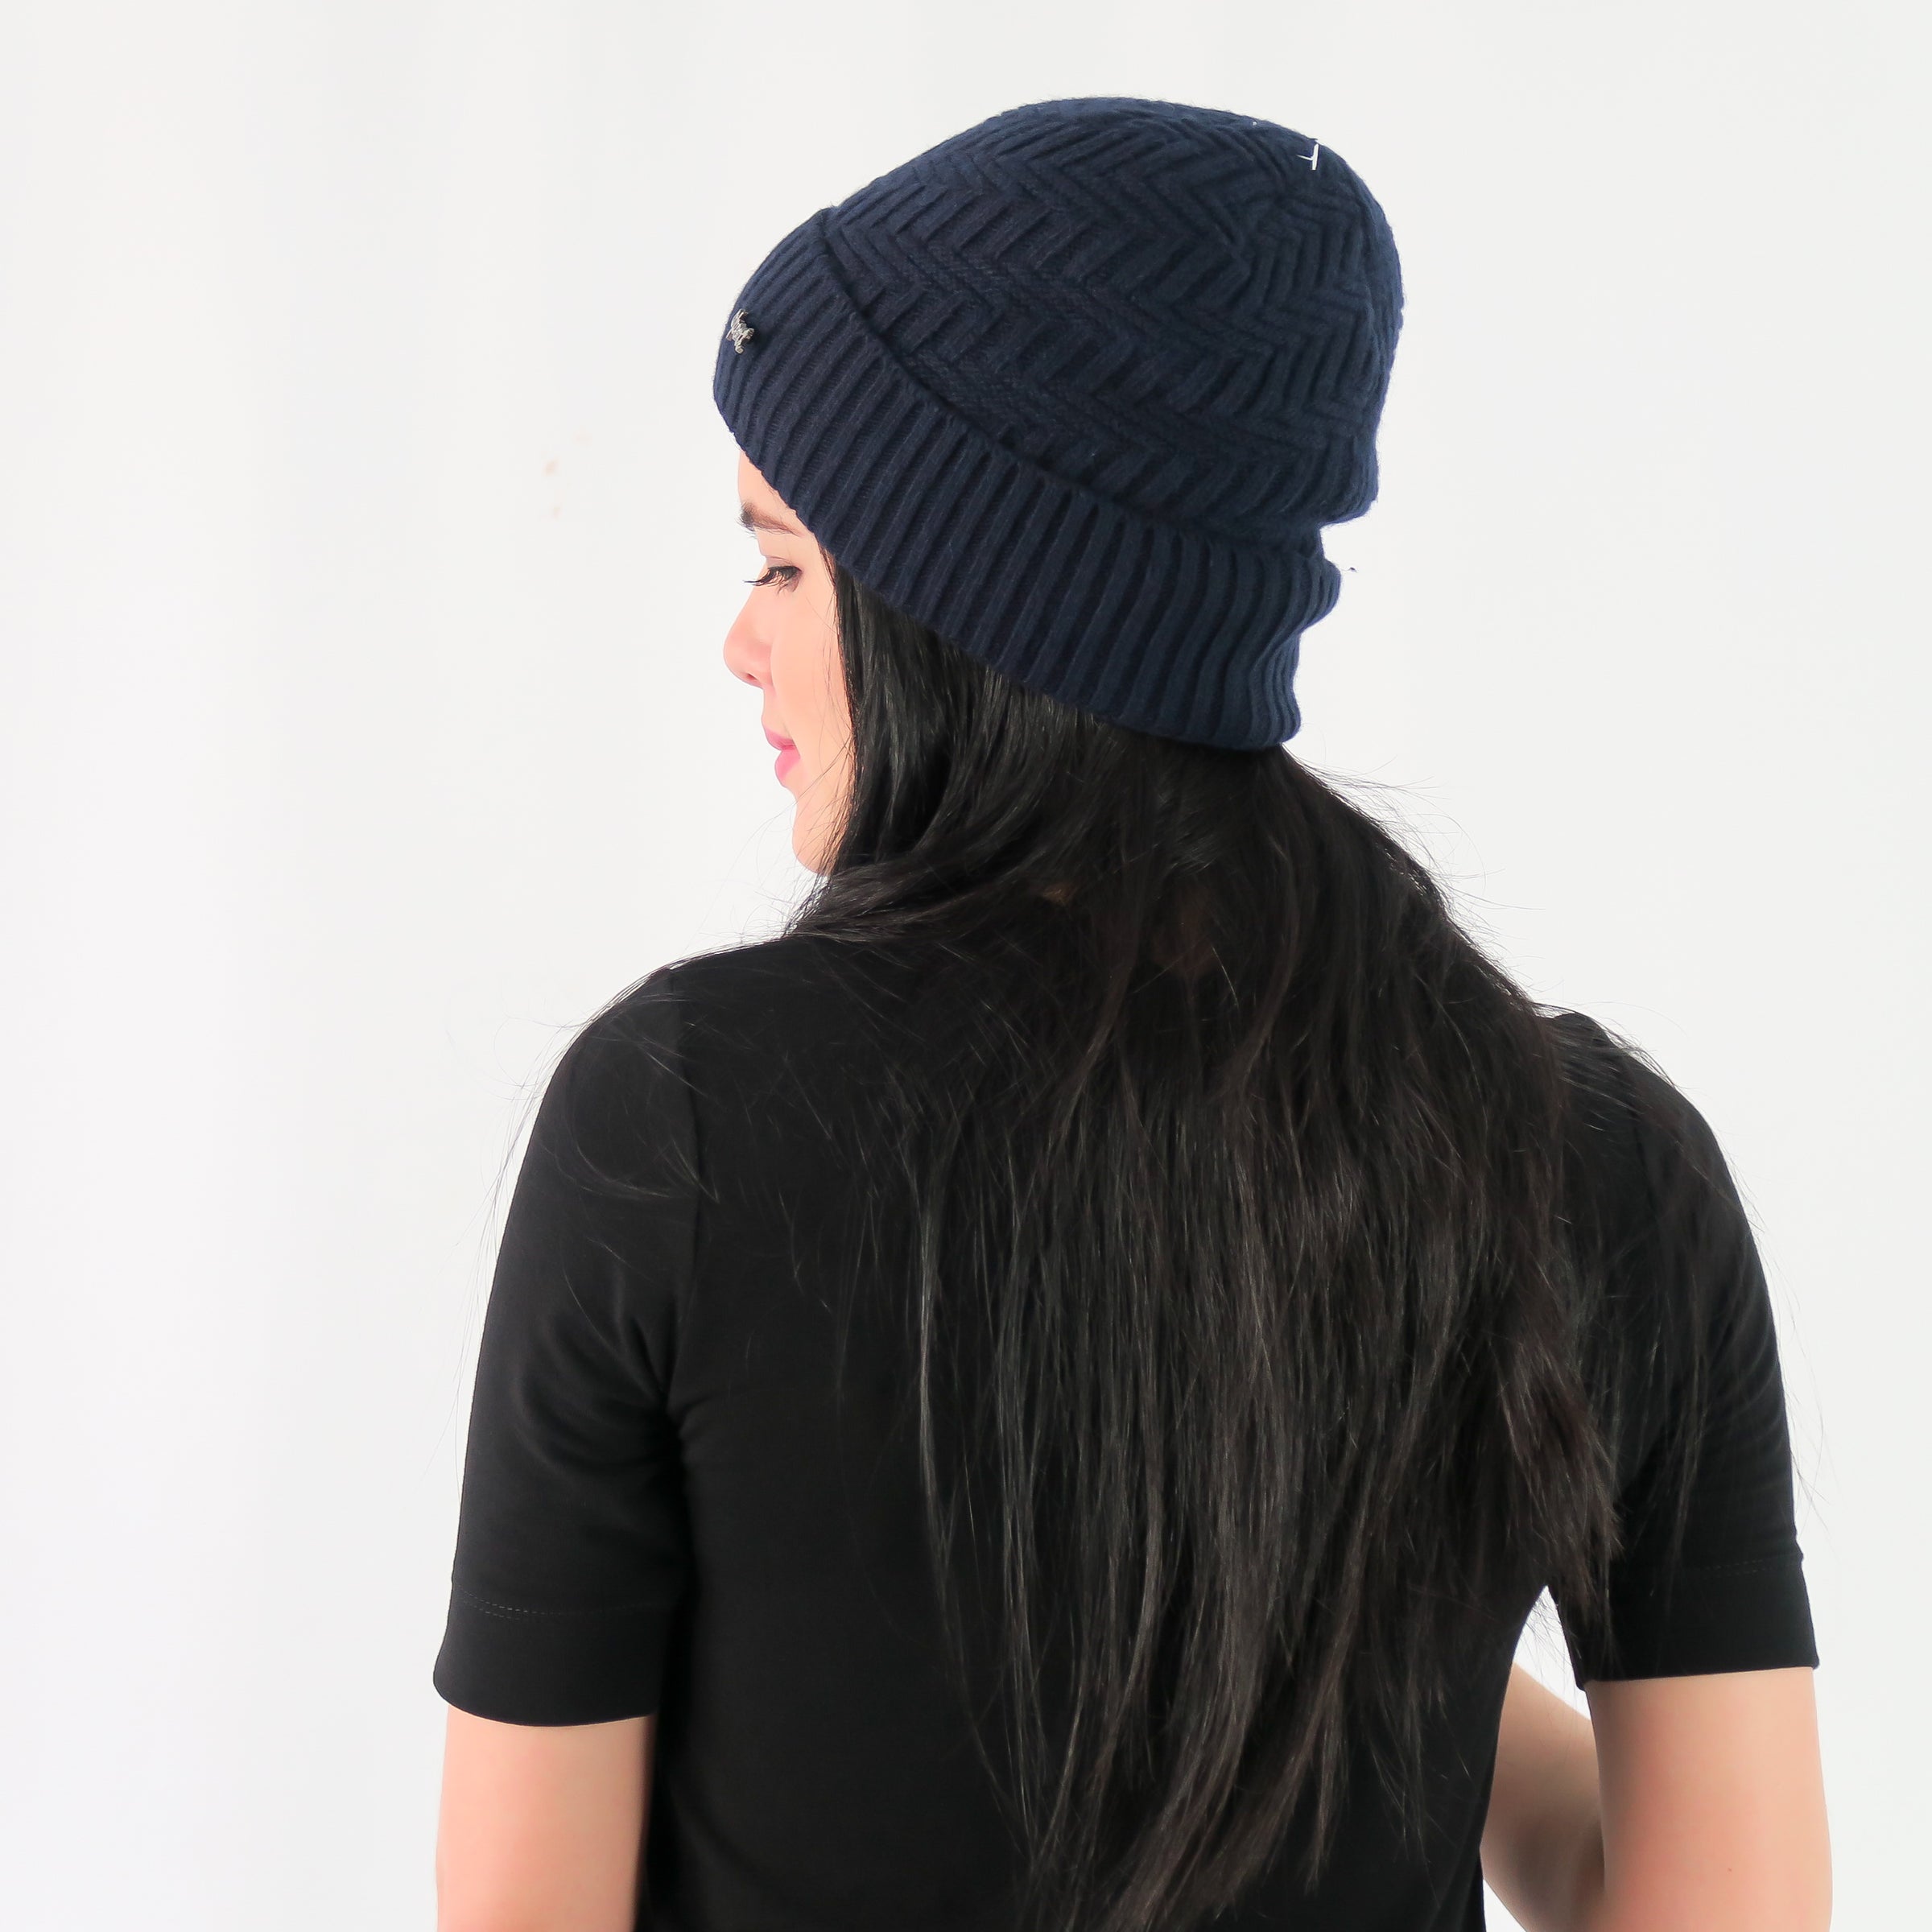 หมวกไหมพรมถักลาย พับขอบ สำหรับกันหนาว - Unisex Cable Knit Fleece Lining Knit Beanie Ski Hat